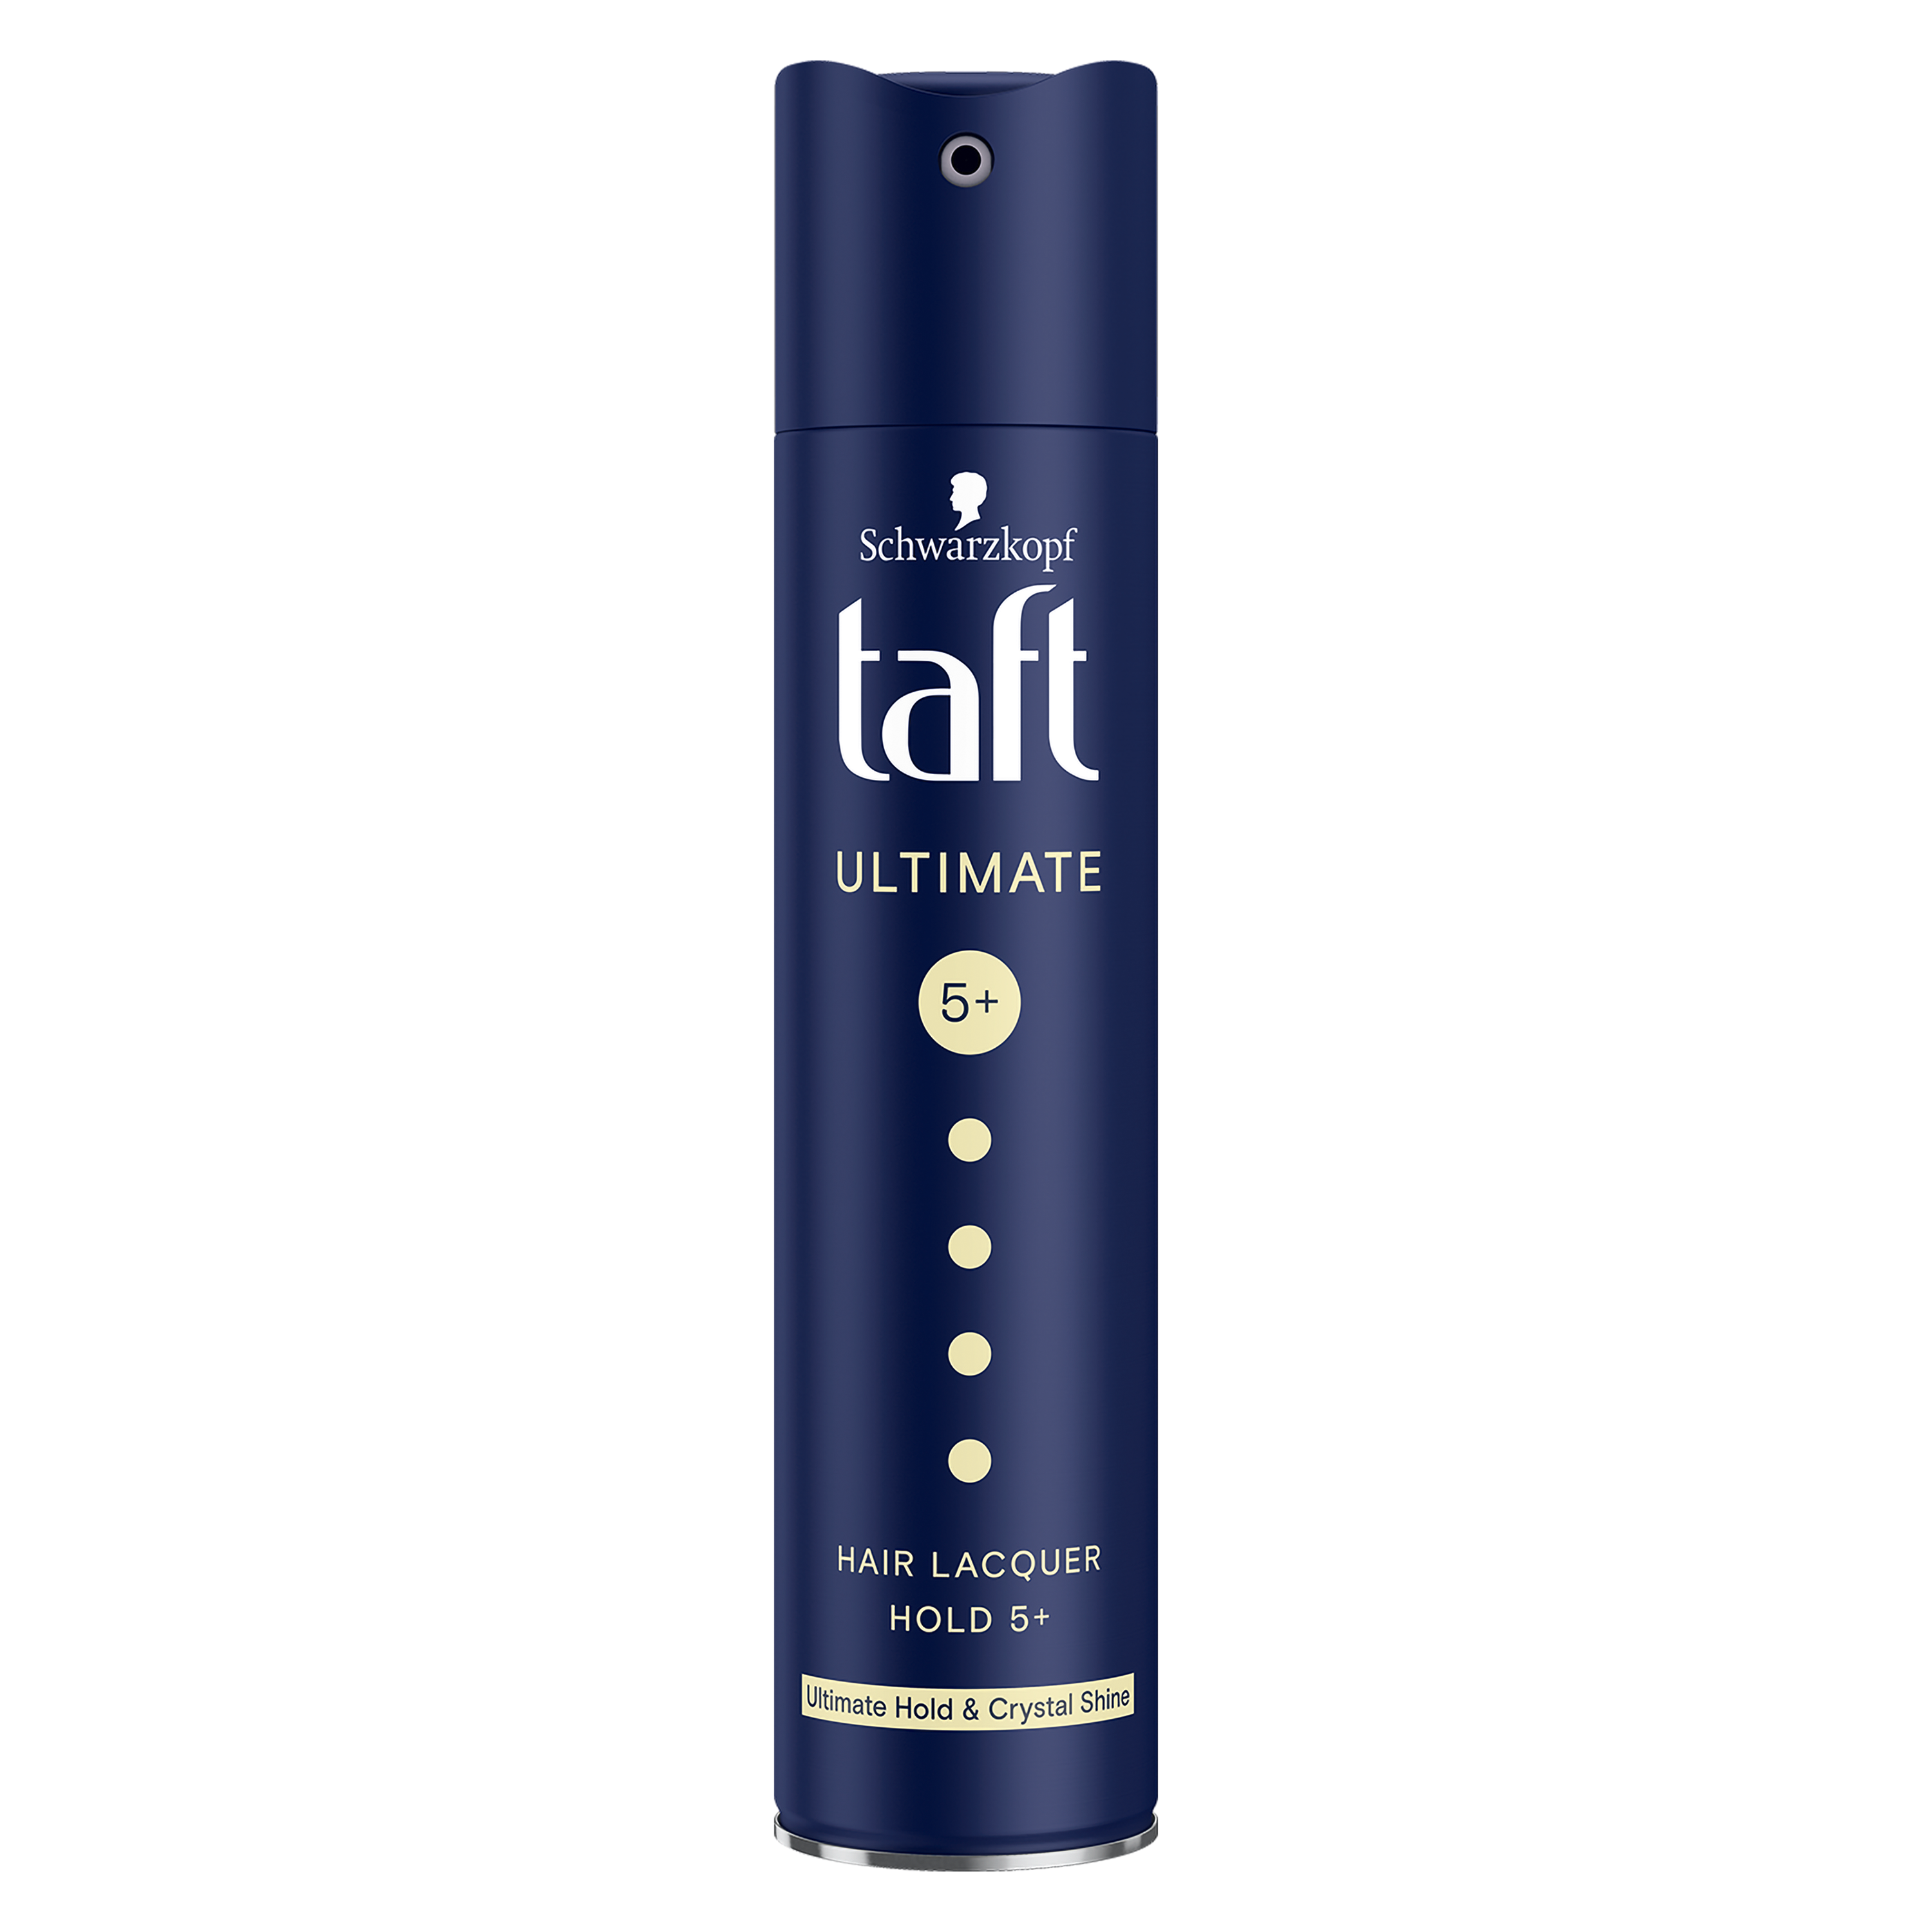 Taft Ultimate, Radykalnie mocny lakier do włosów, 250 ml